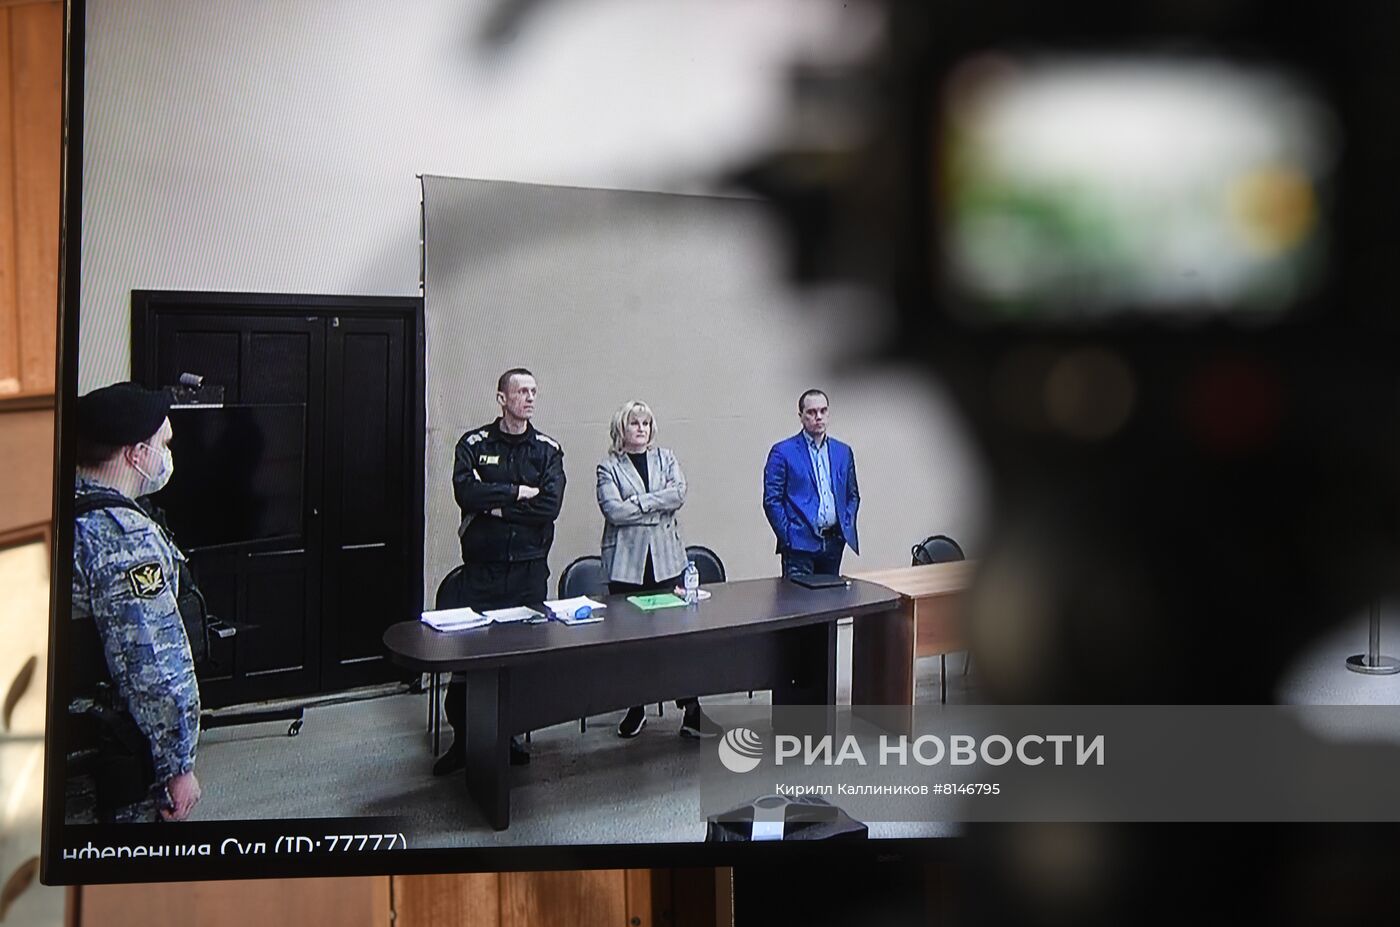 Оглашение приговора  А. Навальному по новому делу о мошенничестве и оскорблении 